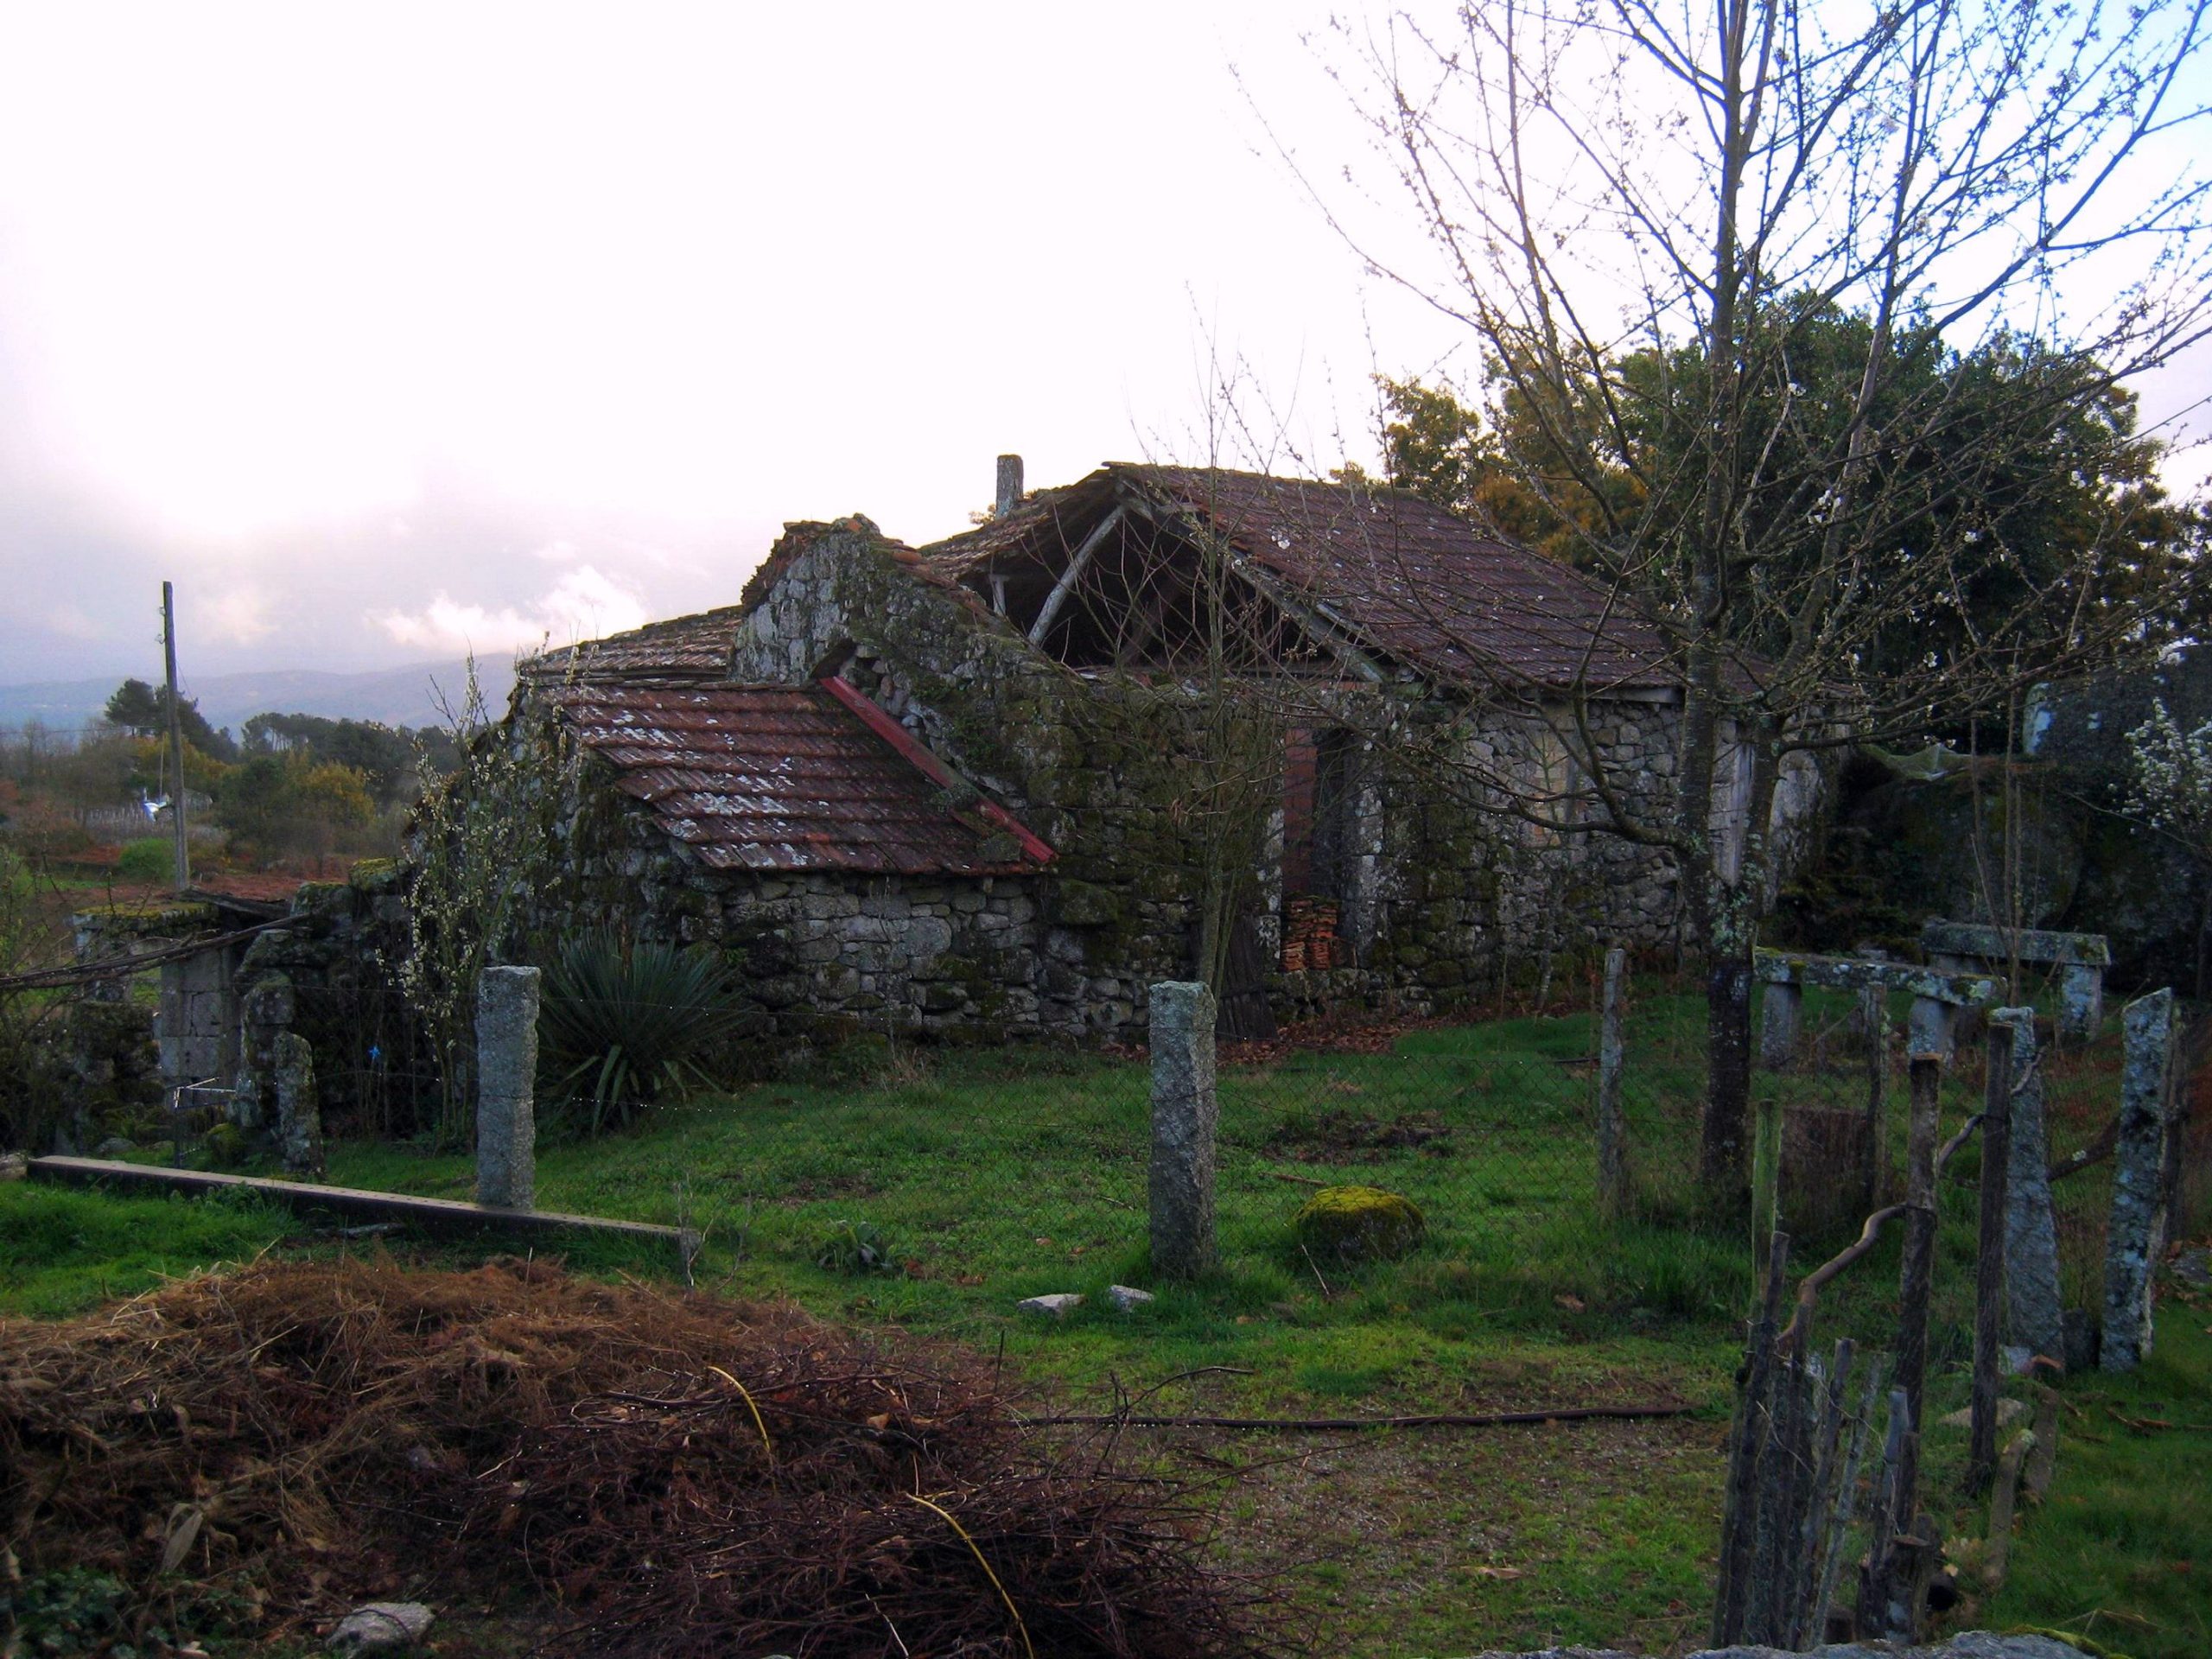 Vente de hameaux abandonnés en Espagne